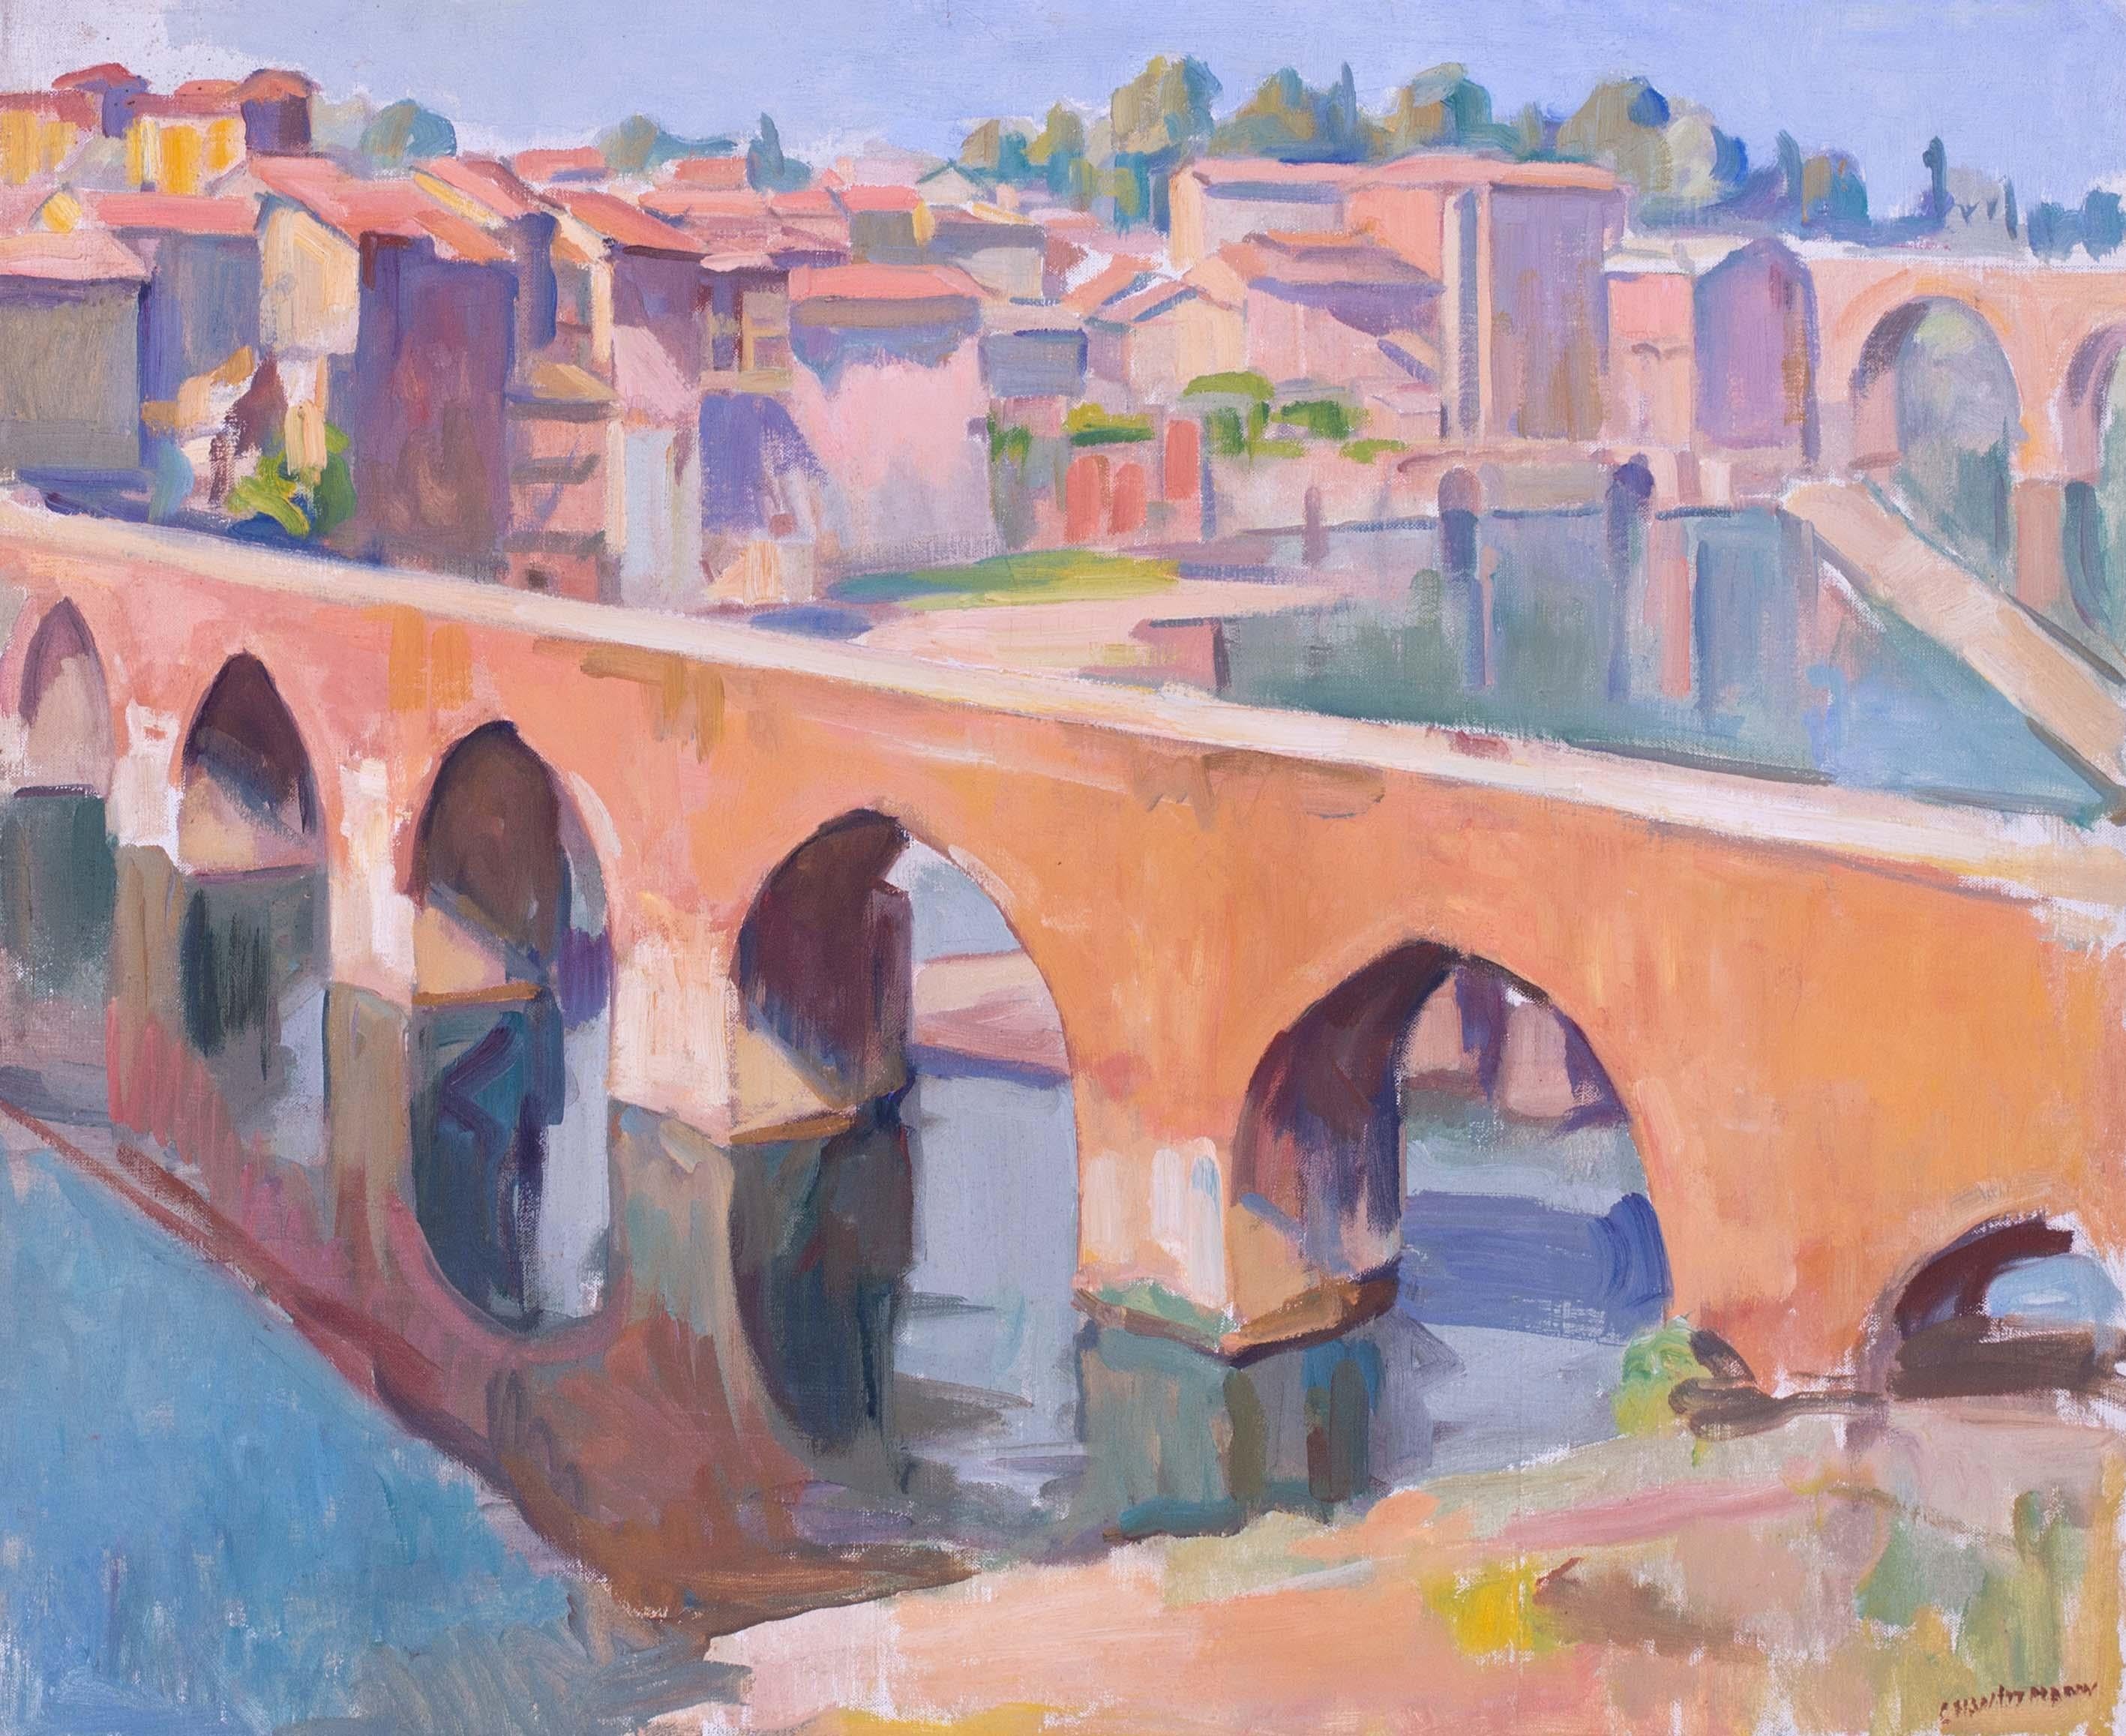 Peinture post-impressionniste française du pont d'Albi, France, par Wittmann - Painting de Charles Wittmann